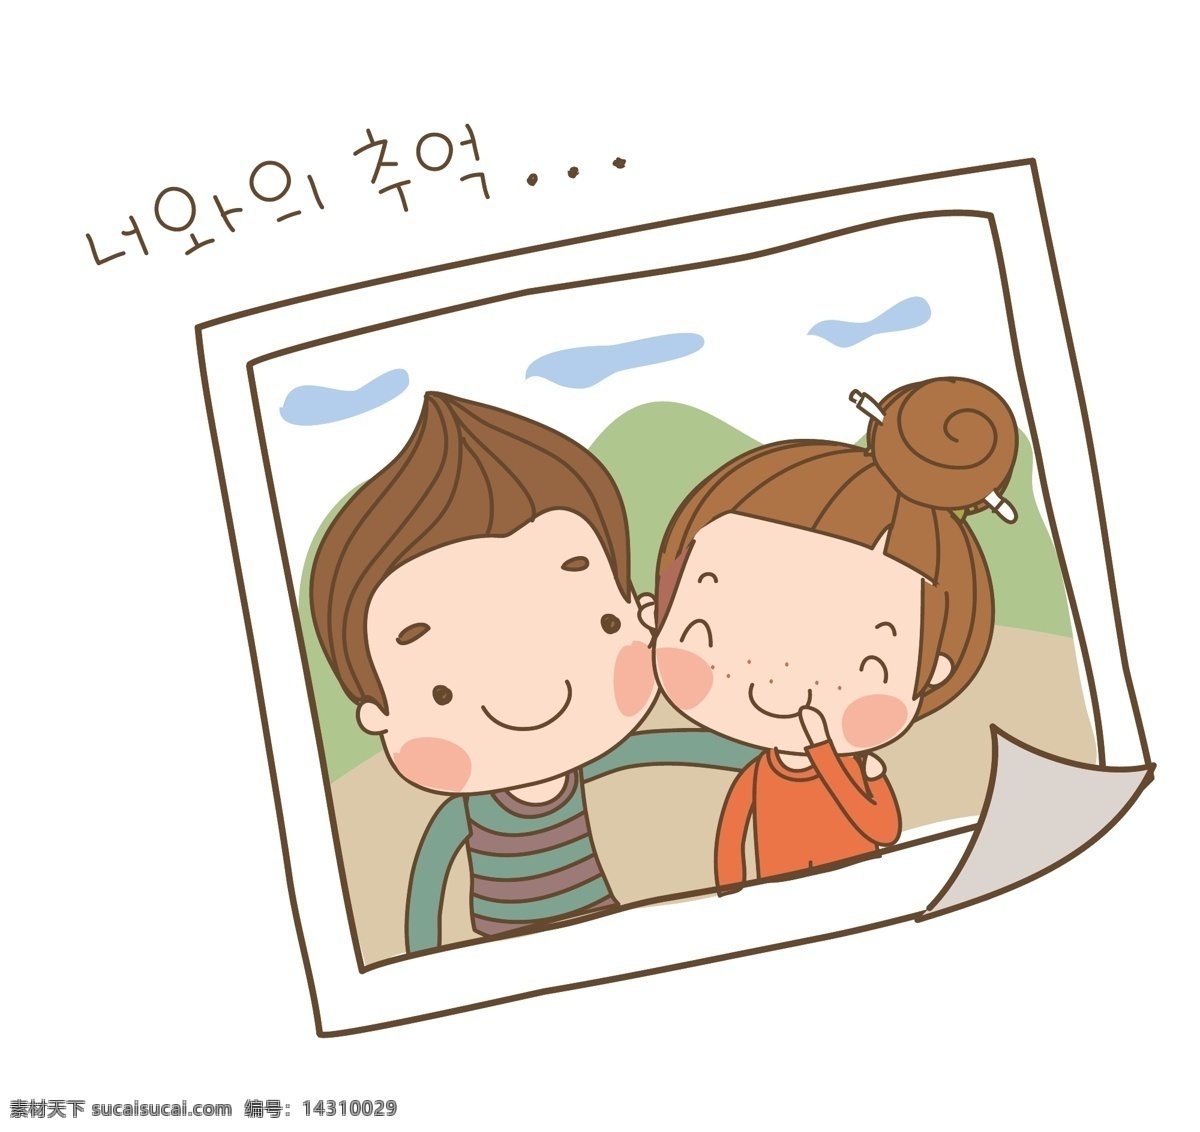 矢量 卡通 合照 韩国 人物 韩国卡通人物 矢量素材 韩国女孩 各种表情 生活场景 人物设定 q版 搞笑人物 卡通人物 外国卡通人